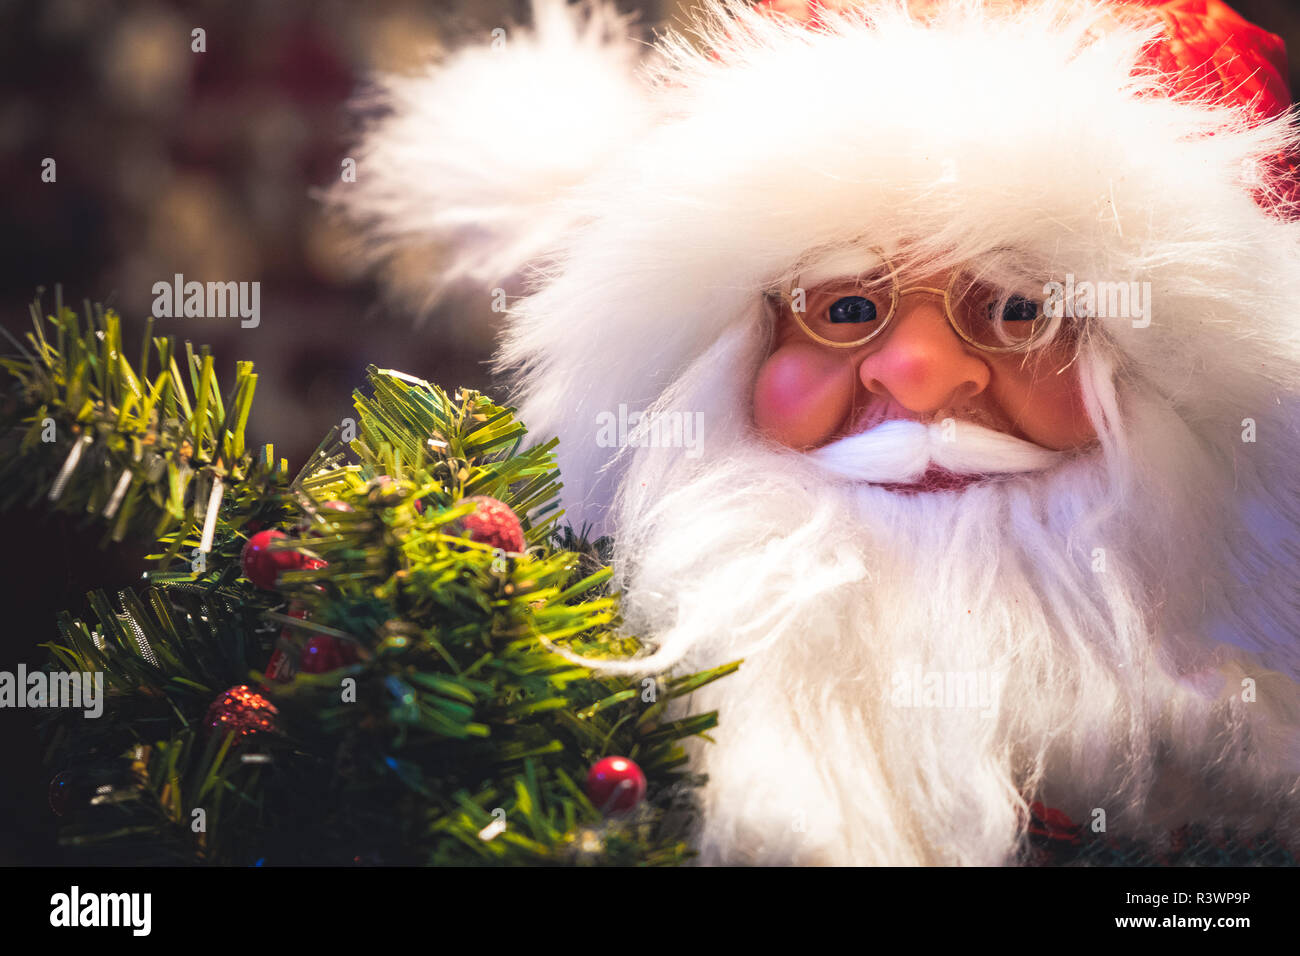 Père Noël avec des lunettes portrait libre expression puppet Banque D'Images